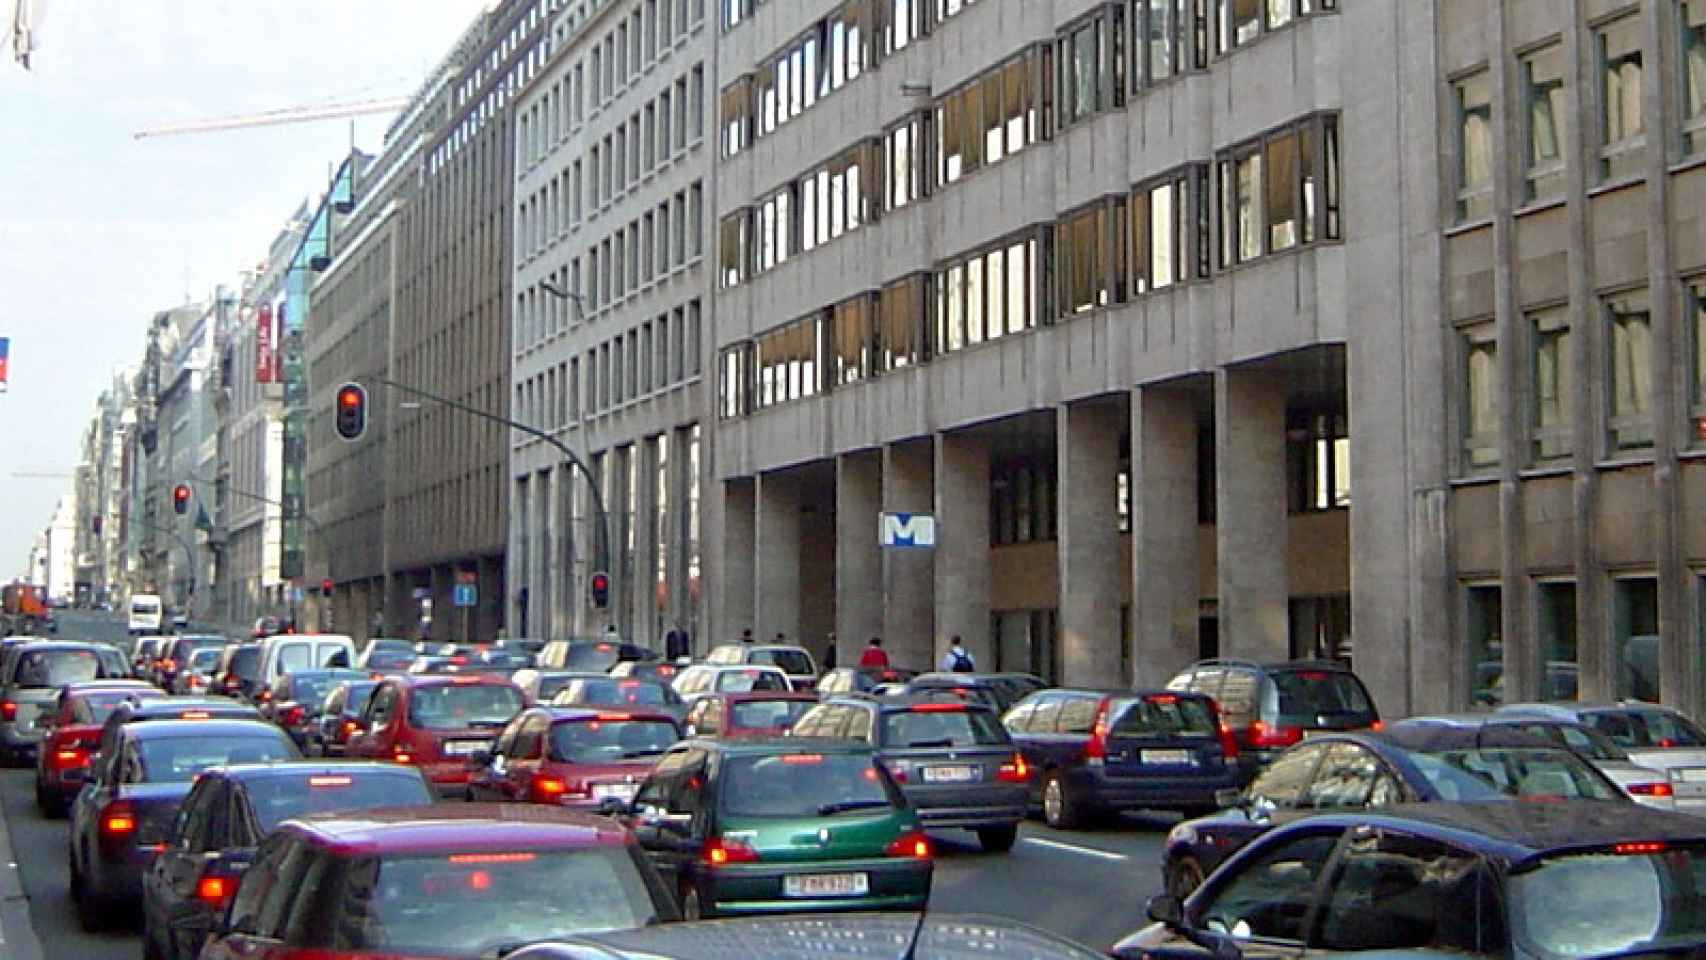 Calle de la oficina del primer ministro de Bruselas, la Rue de la Loi.